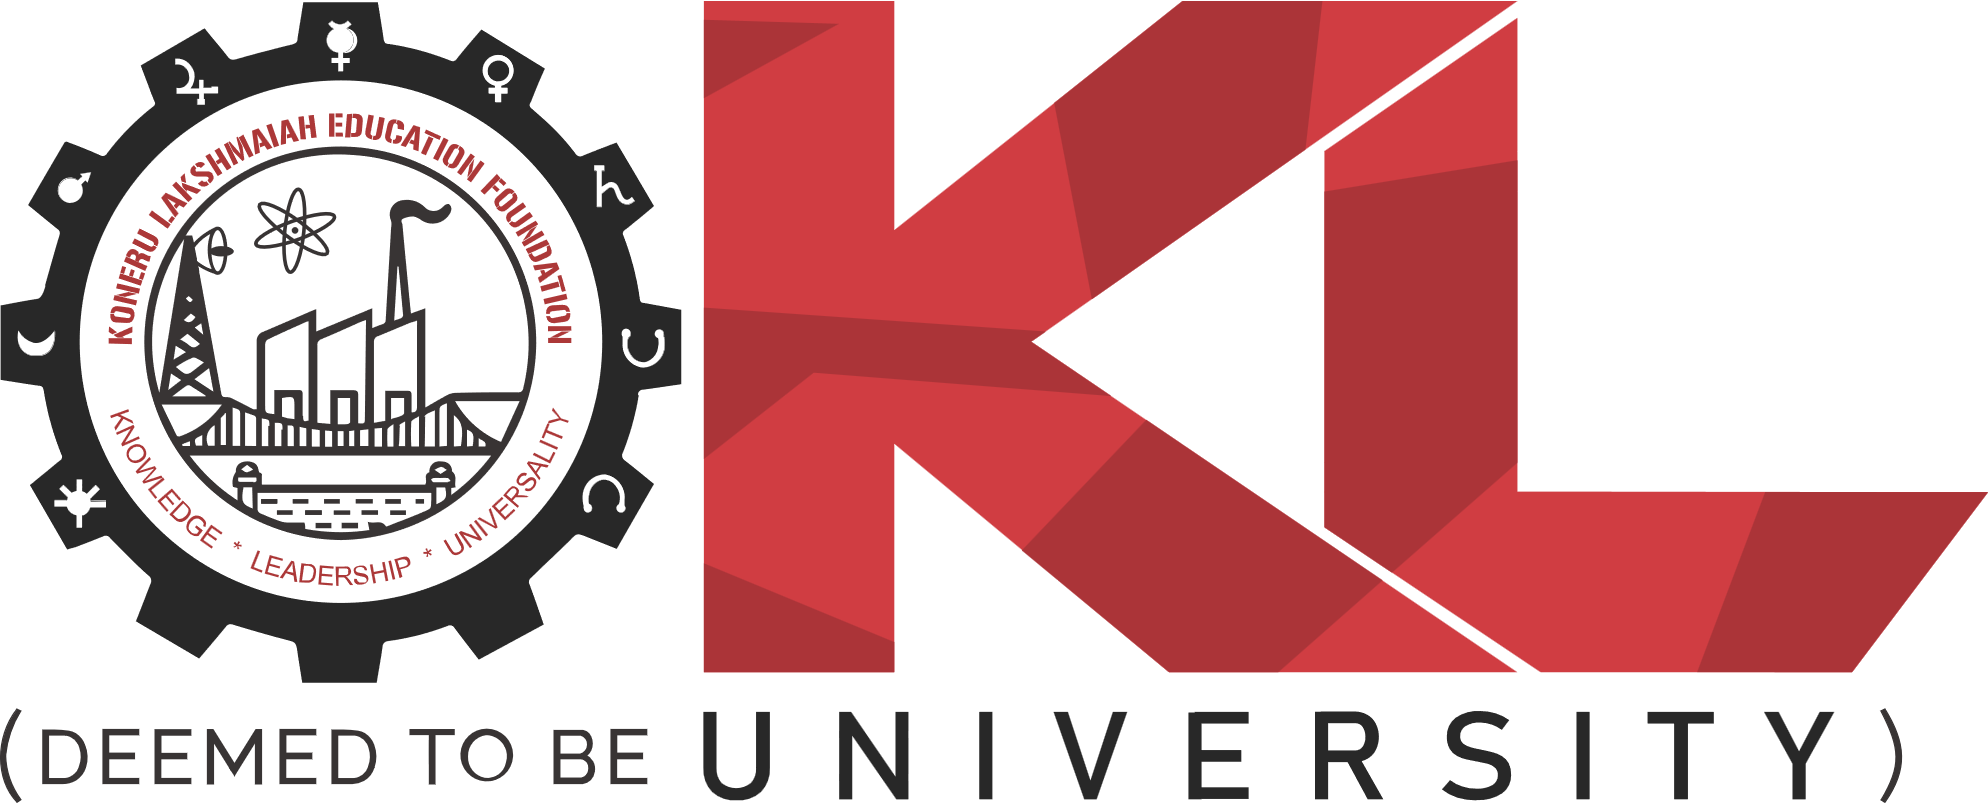 KLEF Deemed University